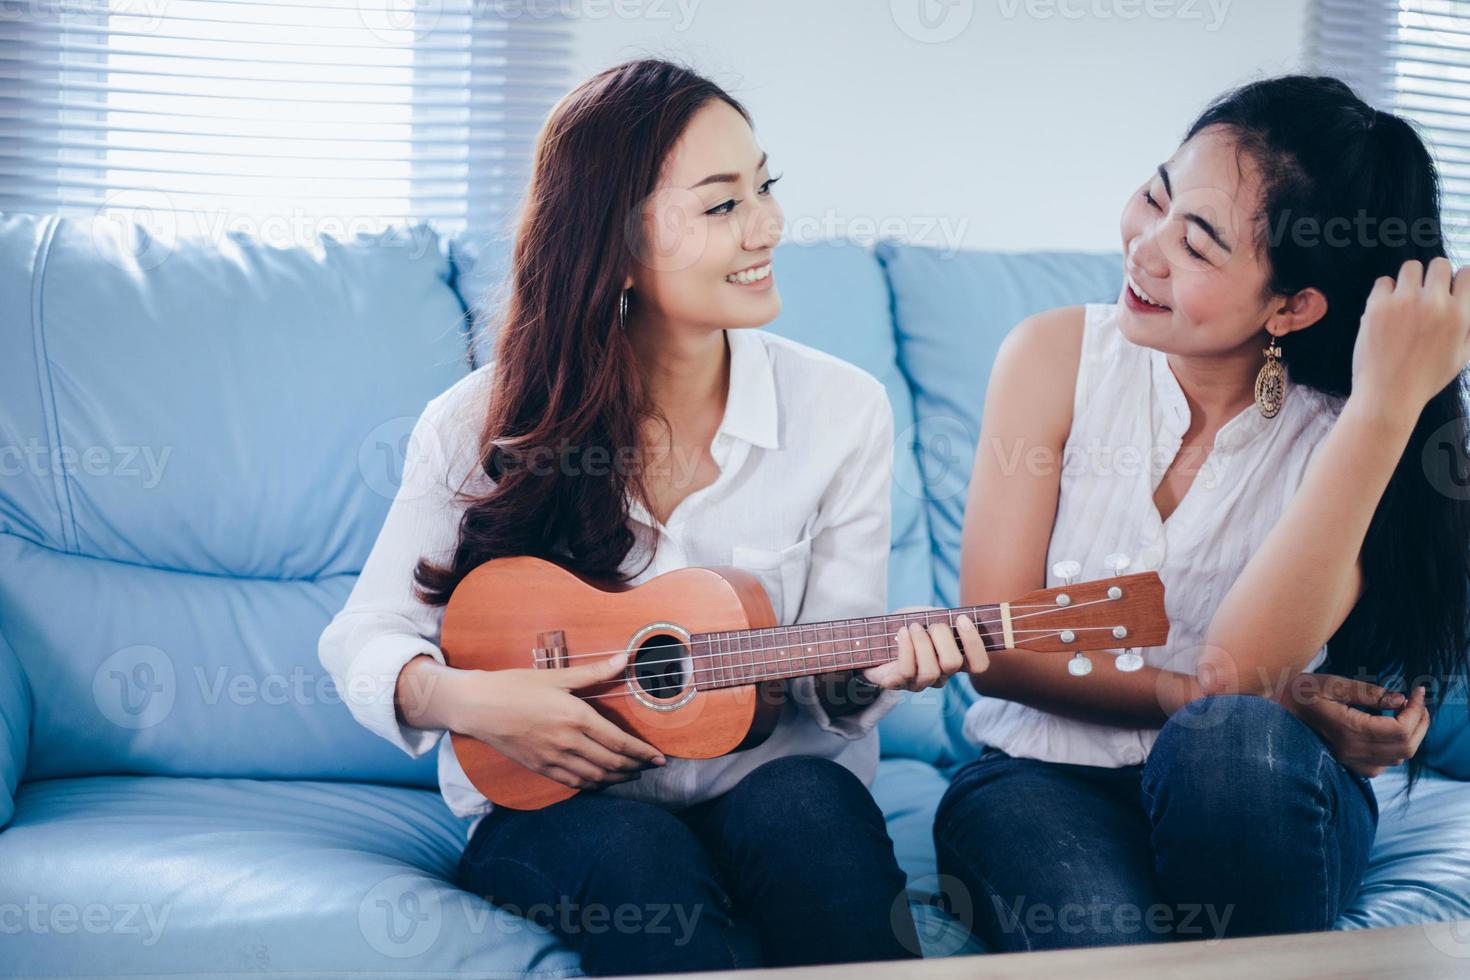 due donne asiatiche si divertono a suonare l'ukulele e sorridono a casa per rilassarsi foto